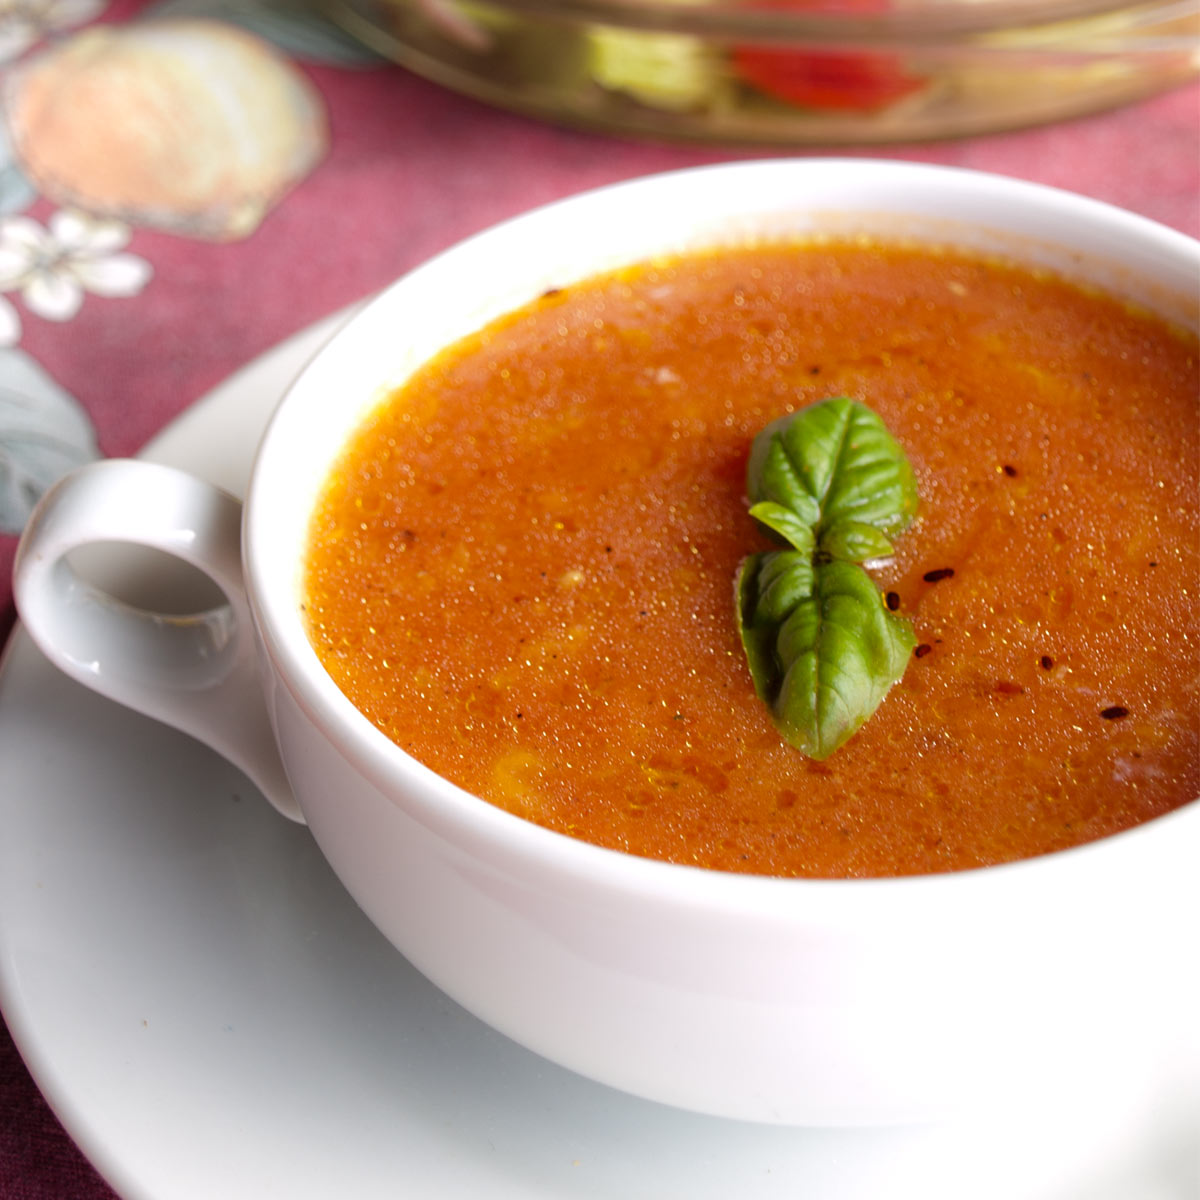 Tomato Orange Soup with Mozzarella